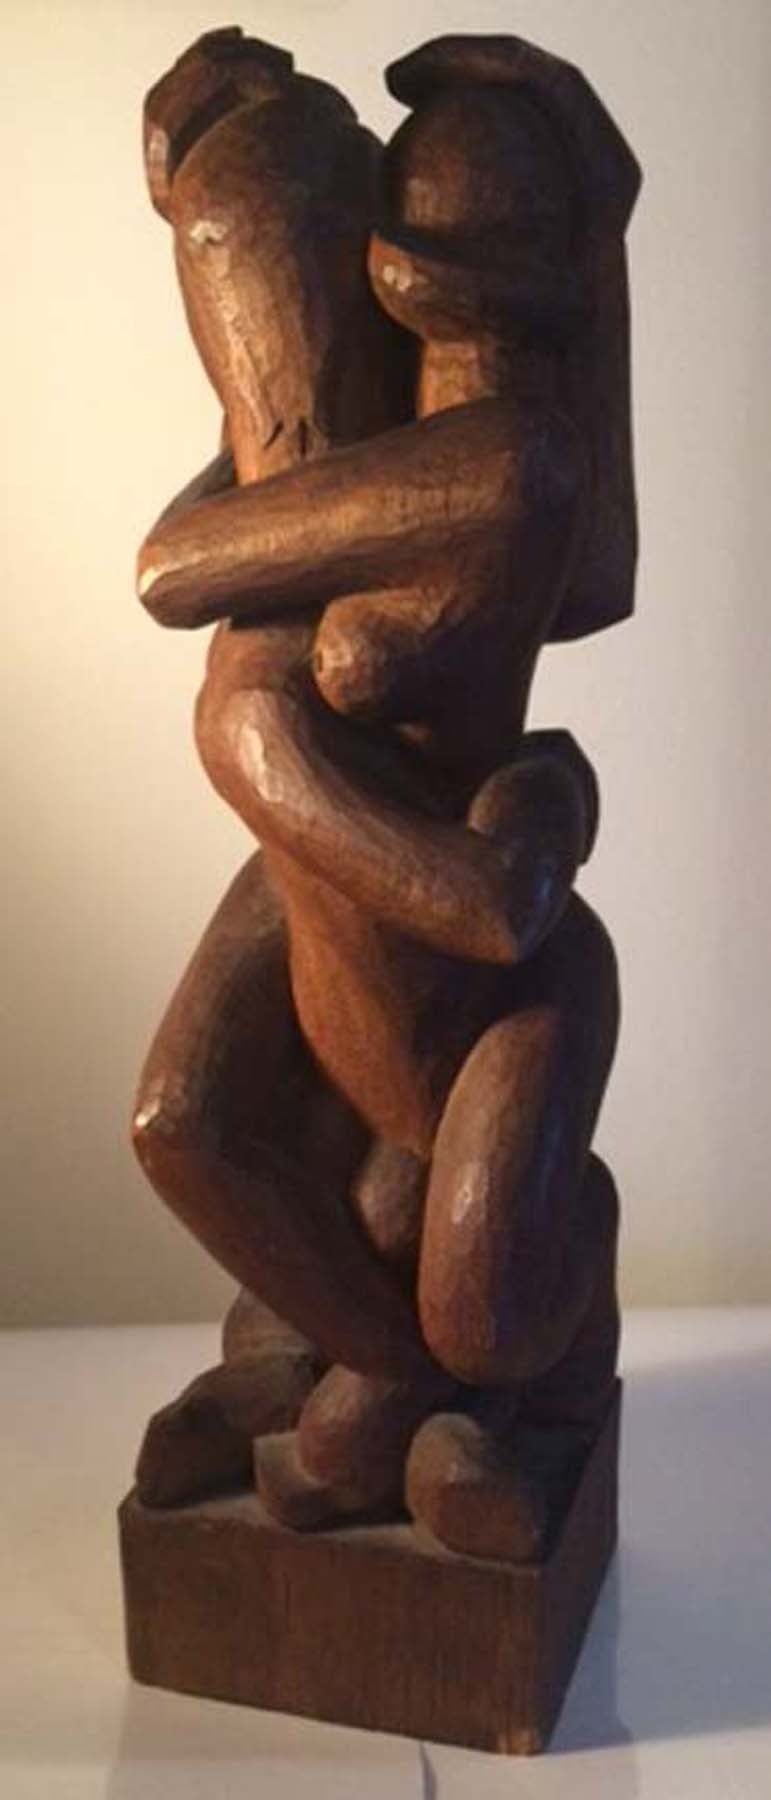 Osmon "Ajax" Jackson Nude Sculpture - Erotica